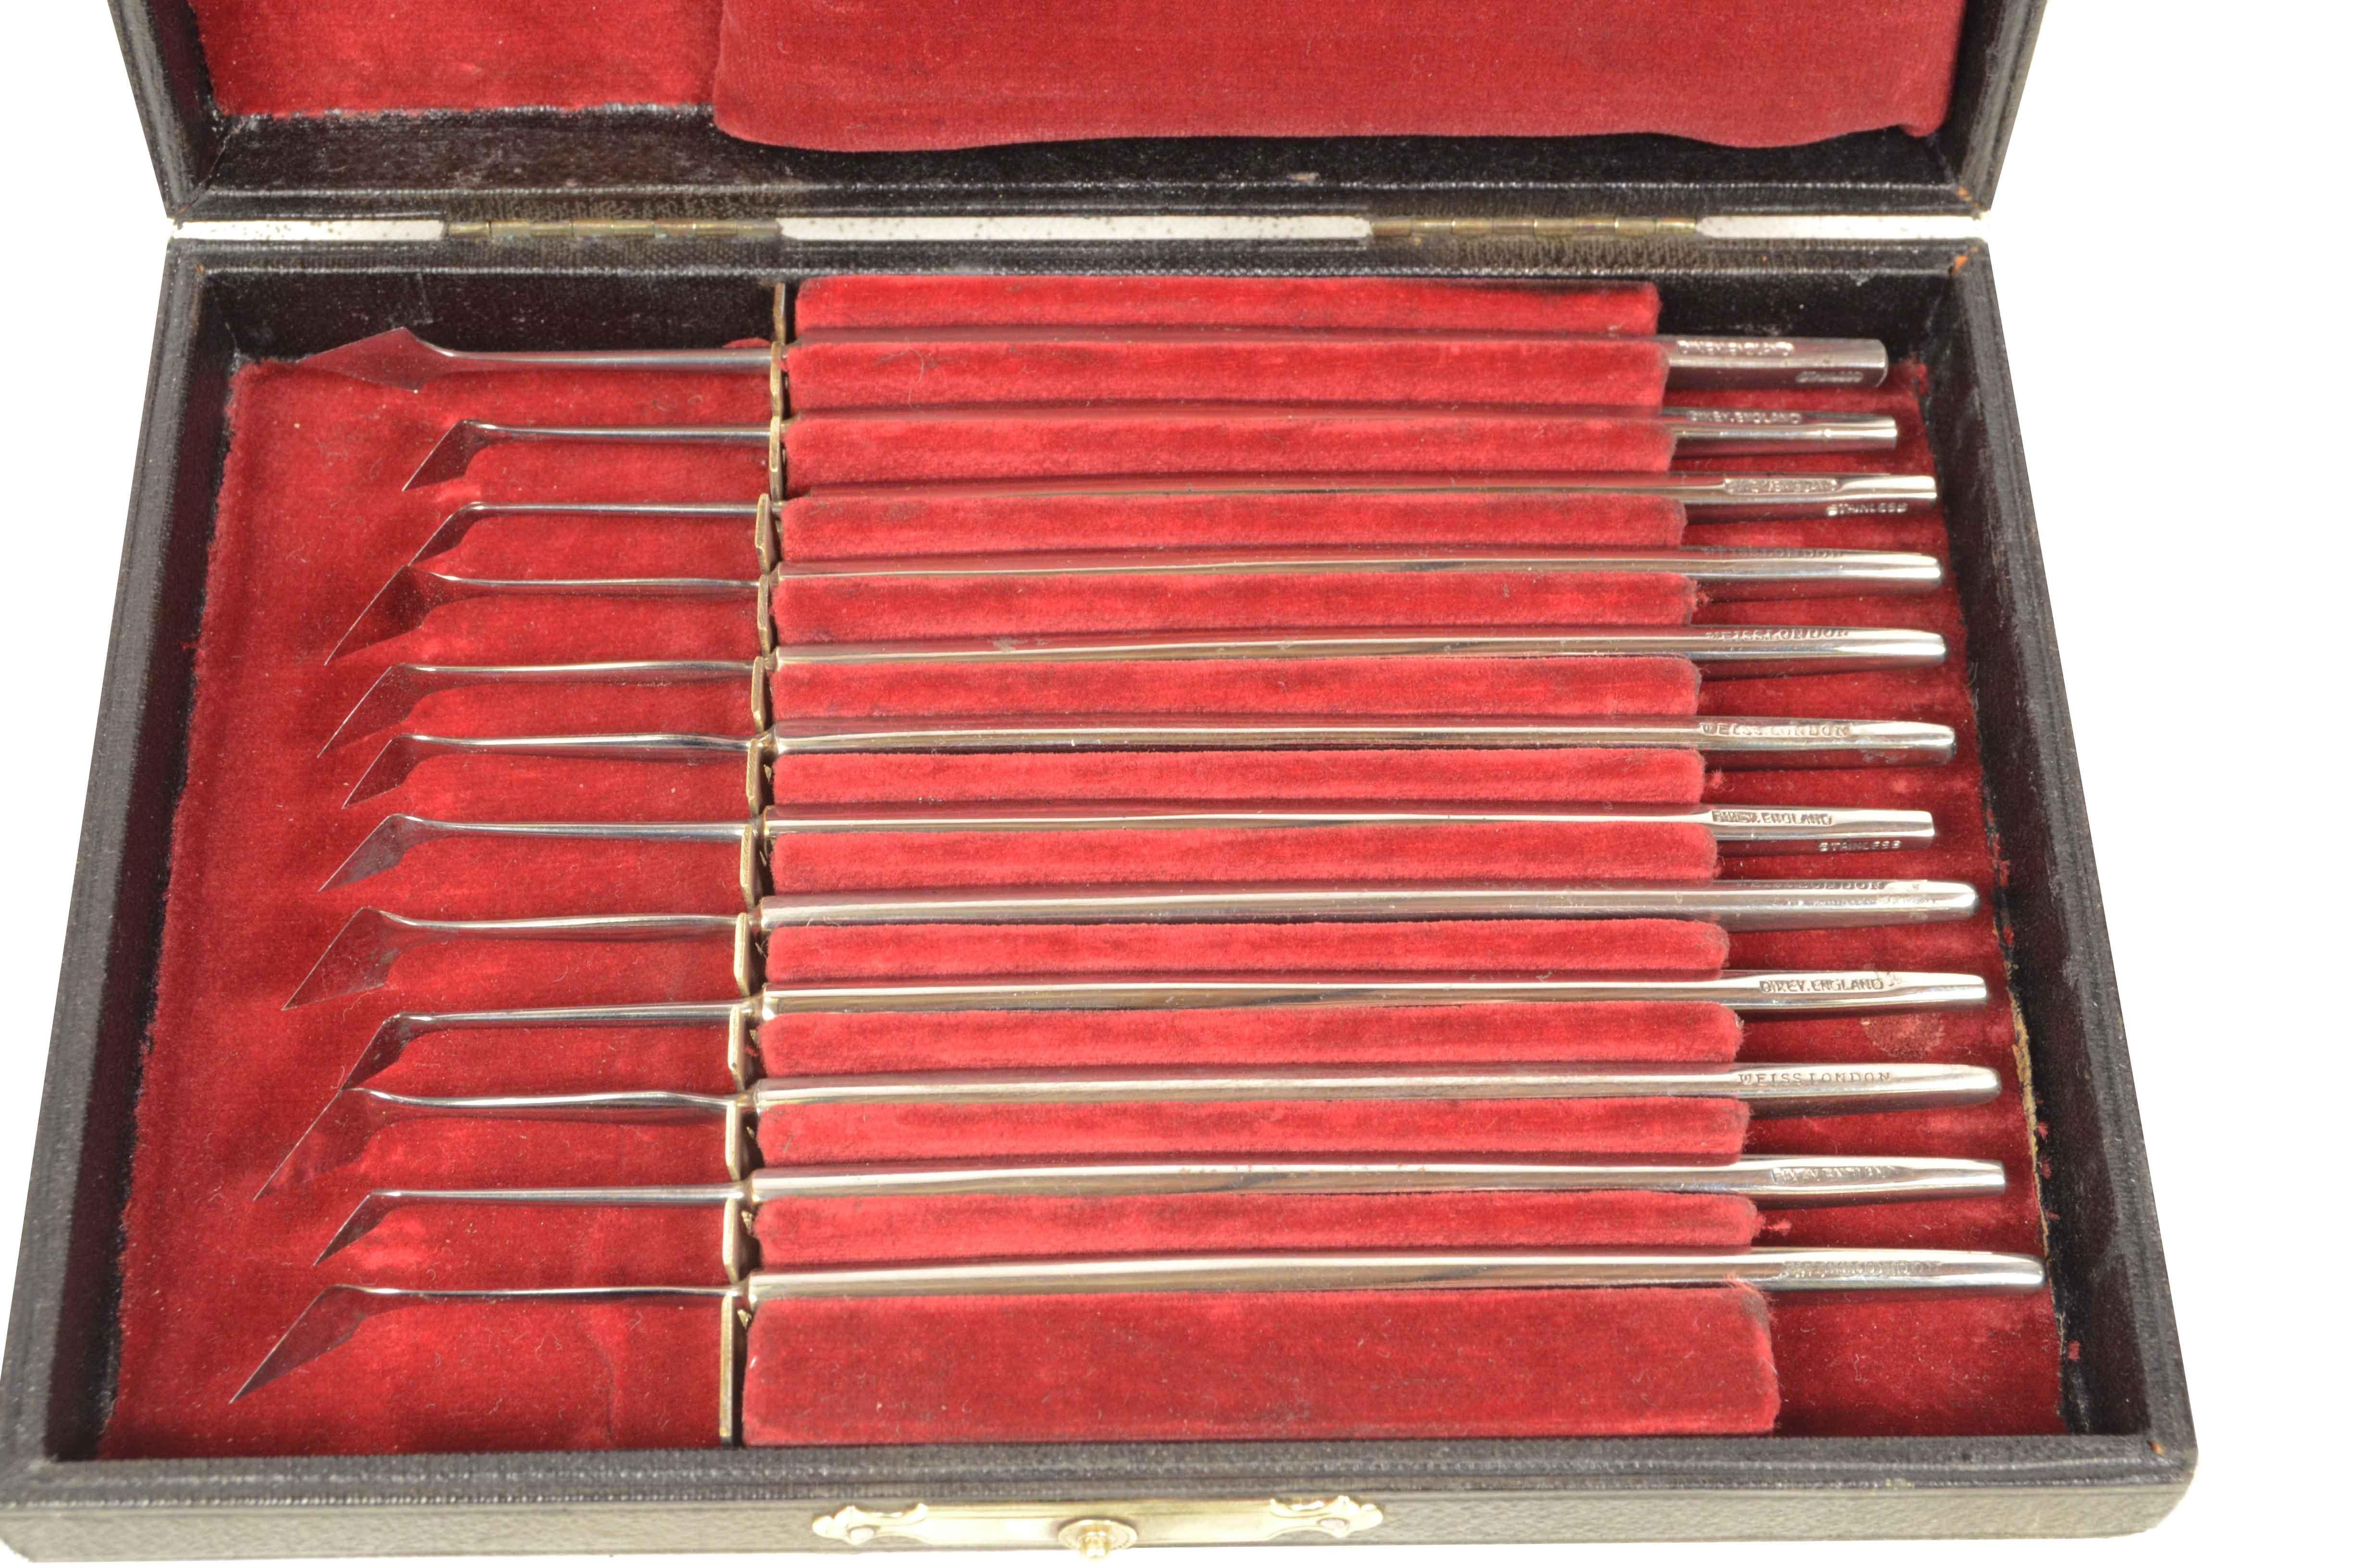 Ophthalmisches Stahlchirurgie-Set, signiert J. Weiss & Son Ltd London und Dixey England, hergestellt Ende des XIX Jahrhunderts ca., in seiner ursprünglichen Holzkiste mit Leder überzogen, rotem Samt Interieur, Messing Verschlusshaken. 
Sehr guter